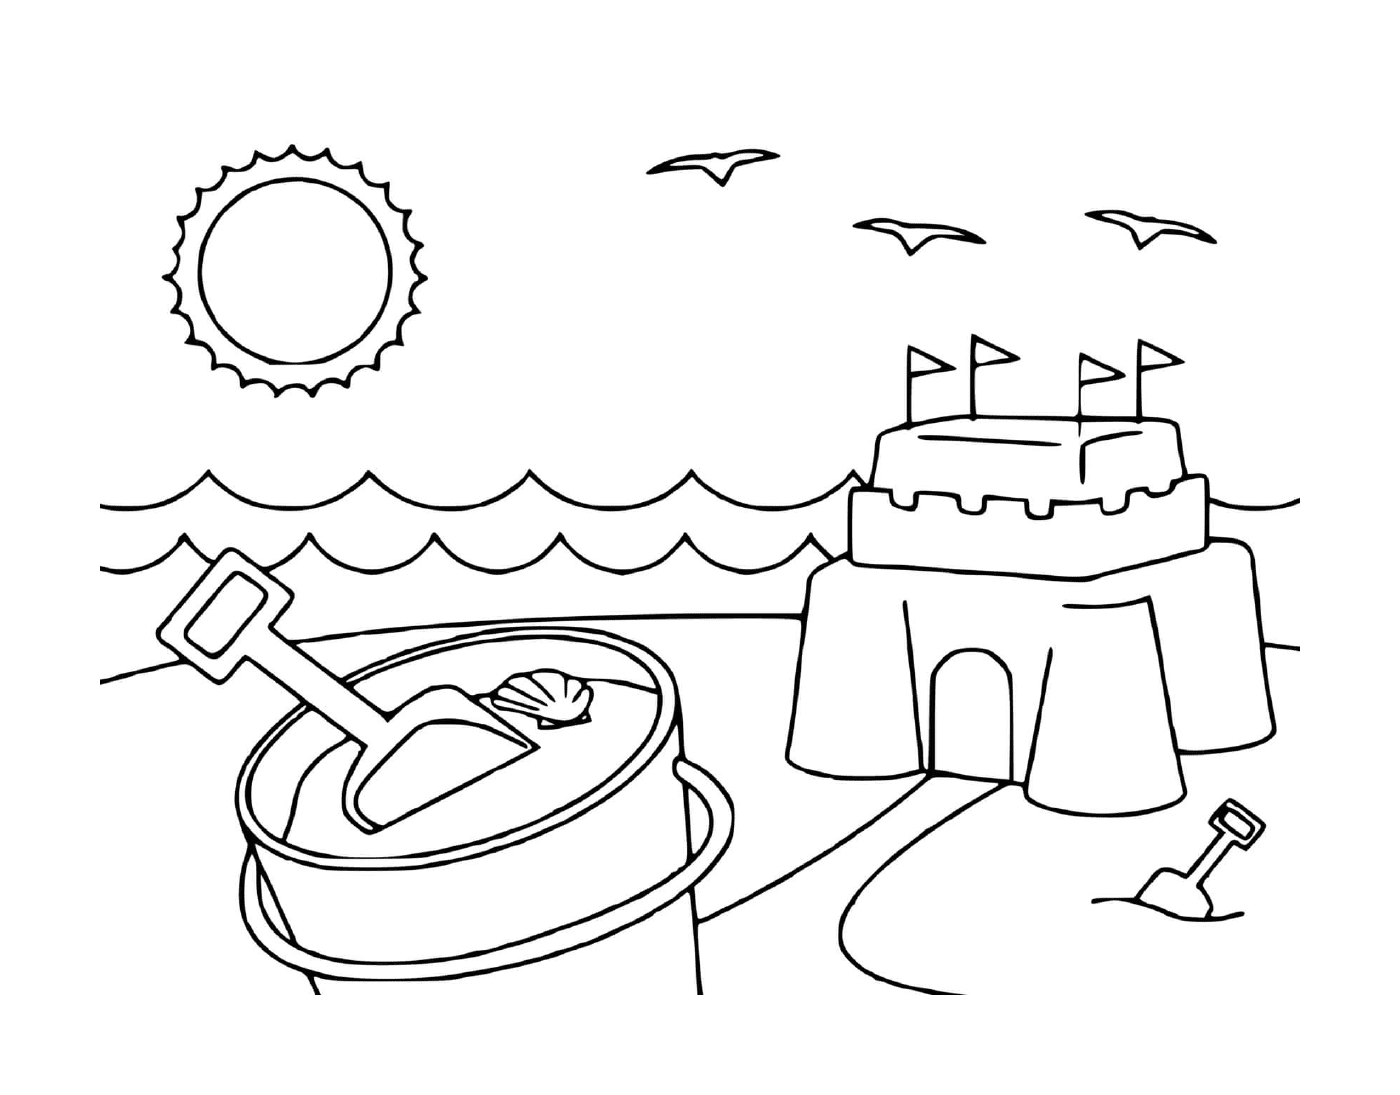   Château de sable sur plage 